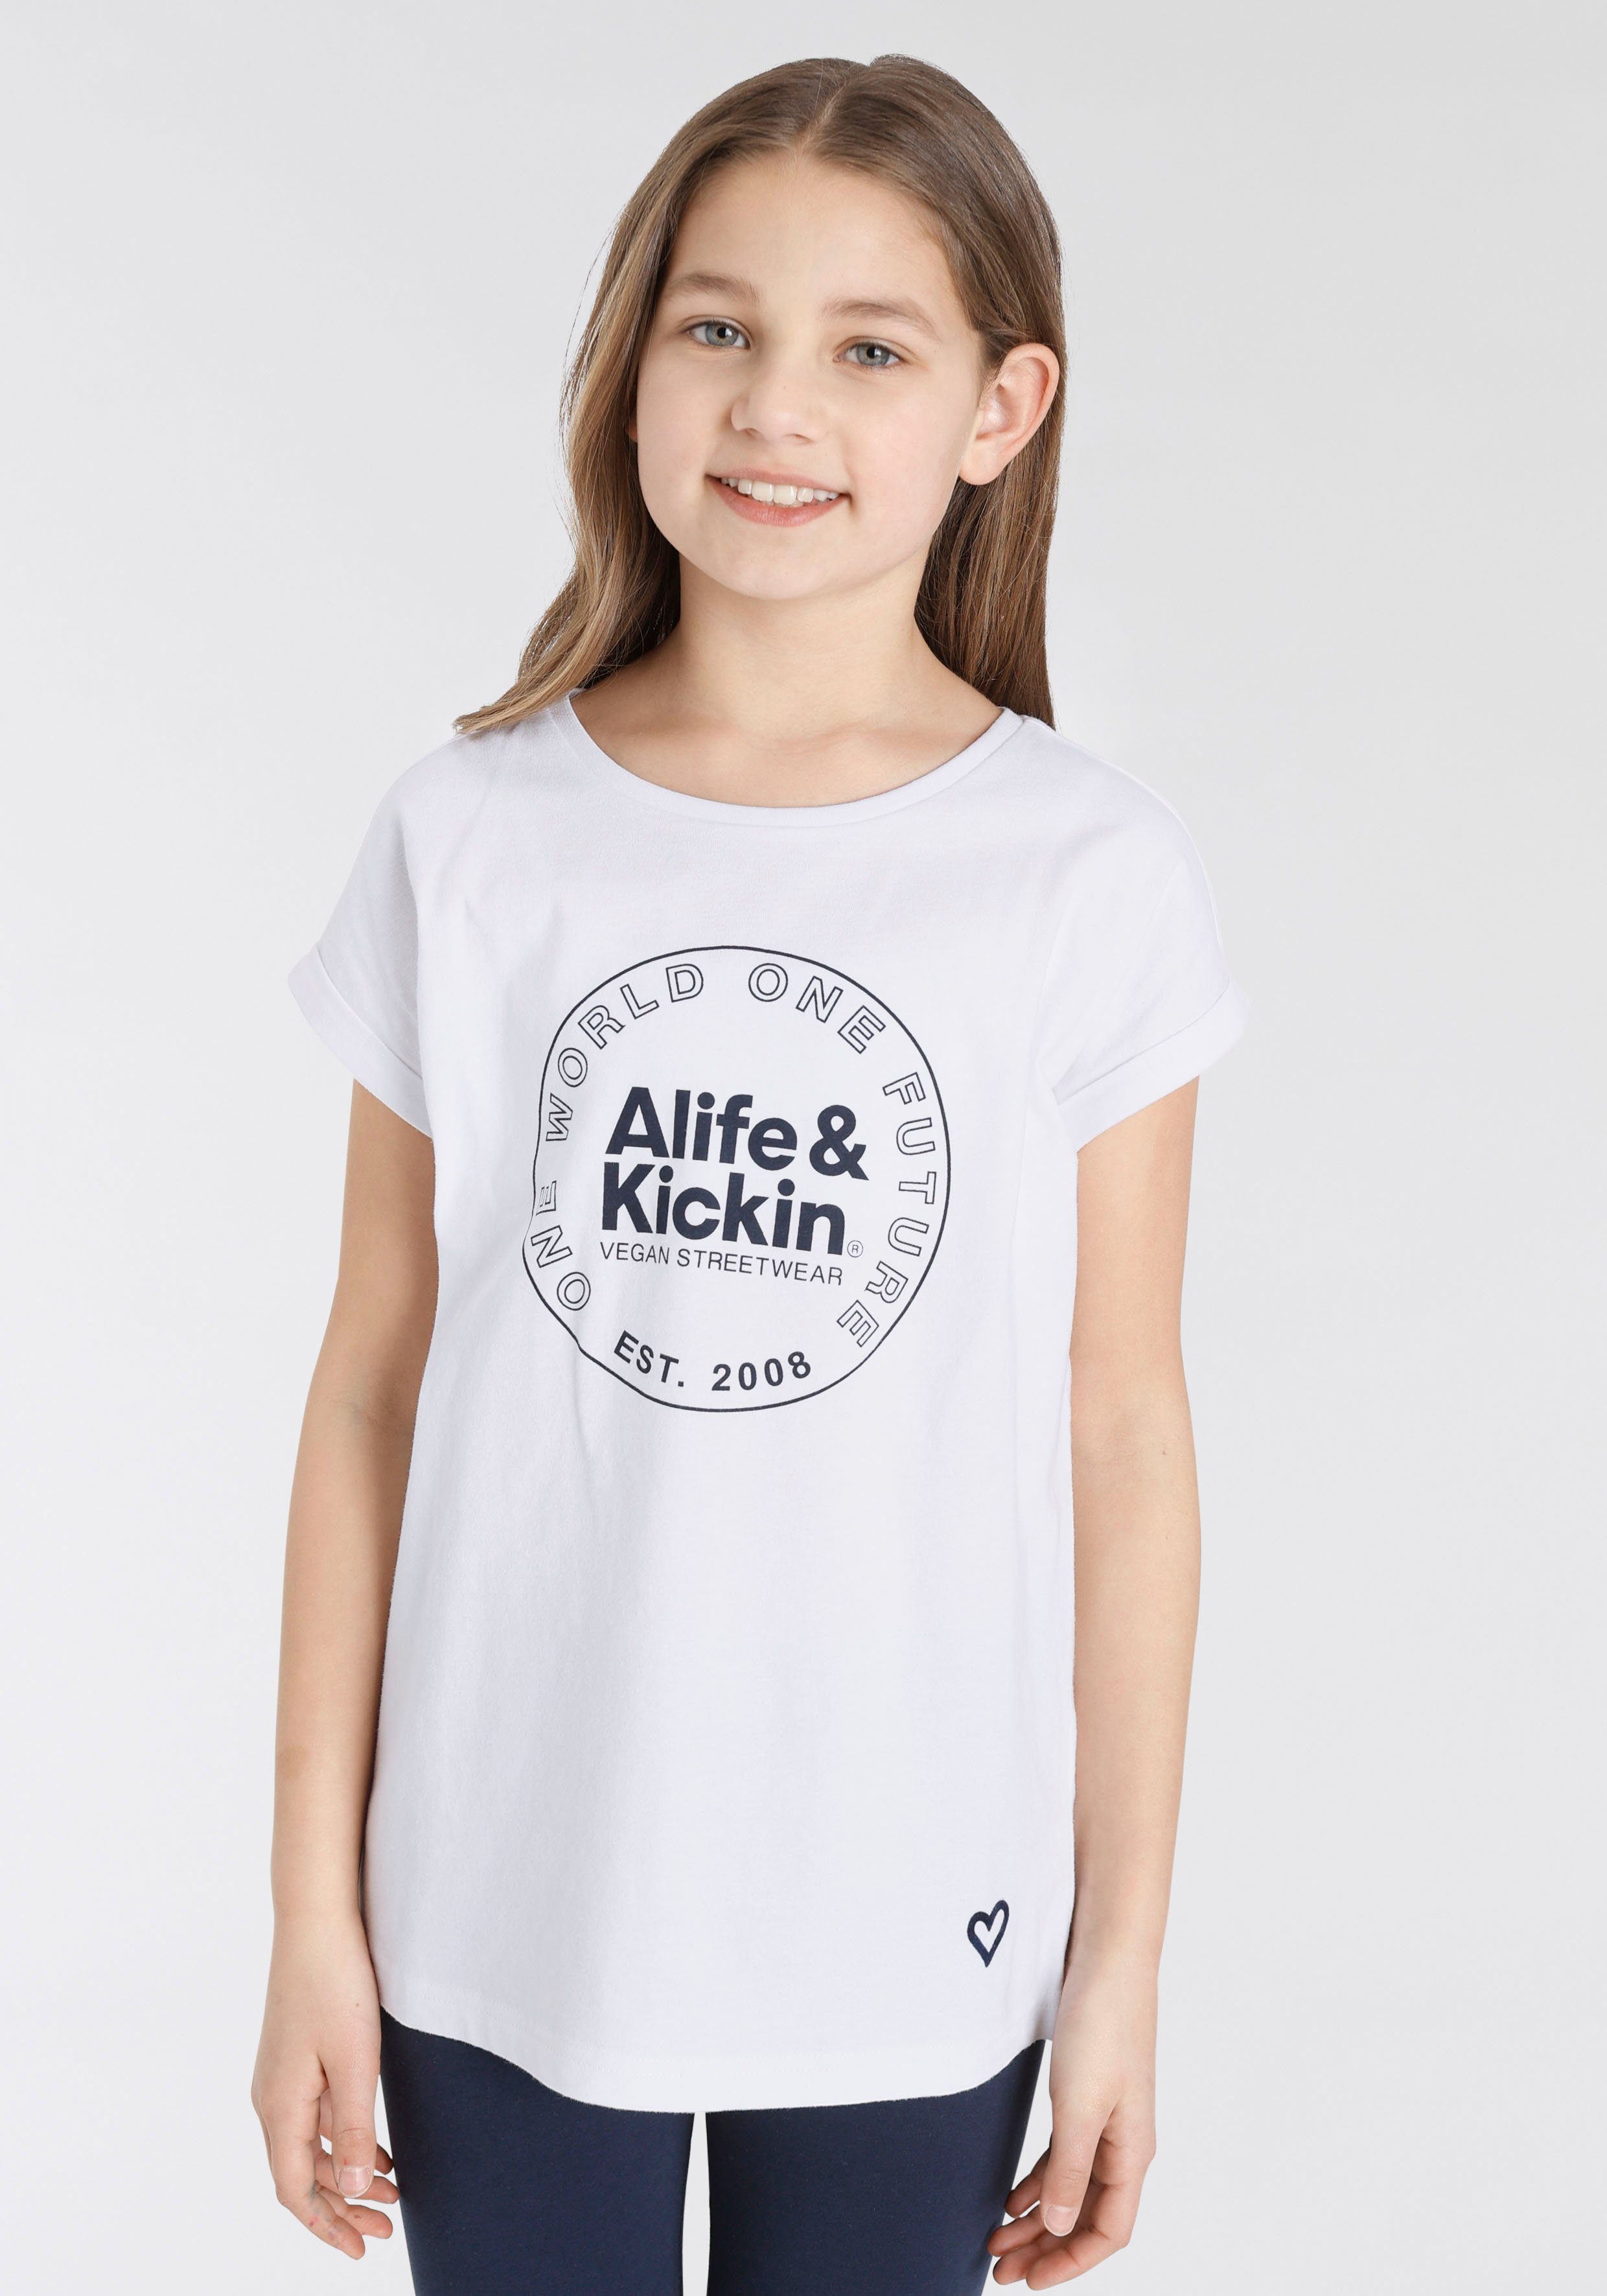 Alife & Kickin T-Shirt mit Kickin MARKE! Logo für NEUE Kids. Alife Druck, &